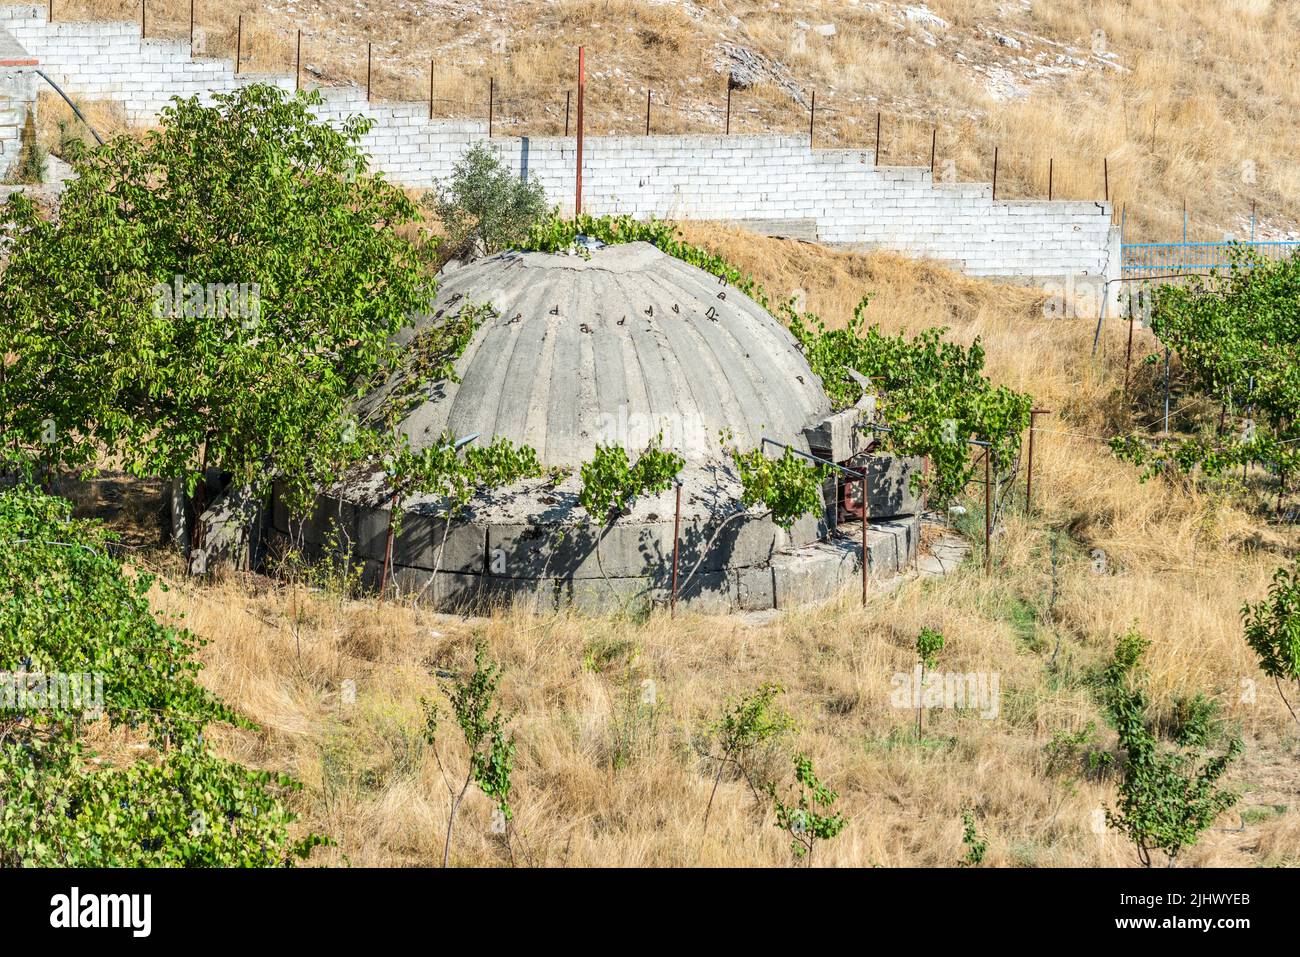 Jorgucat, Albanie - 10 septembre 2021 : bunker militaire en béton en Albanie. Les bunkers ont été construits par le dictateur communiste W pendant la guerre froide Banque D'Images